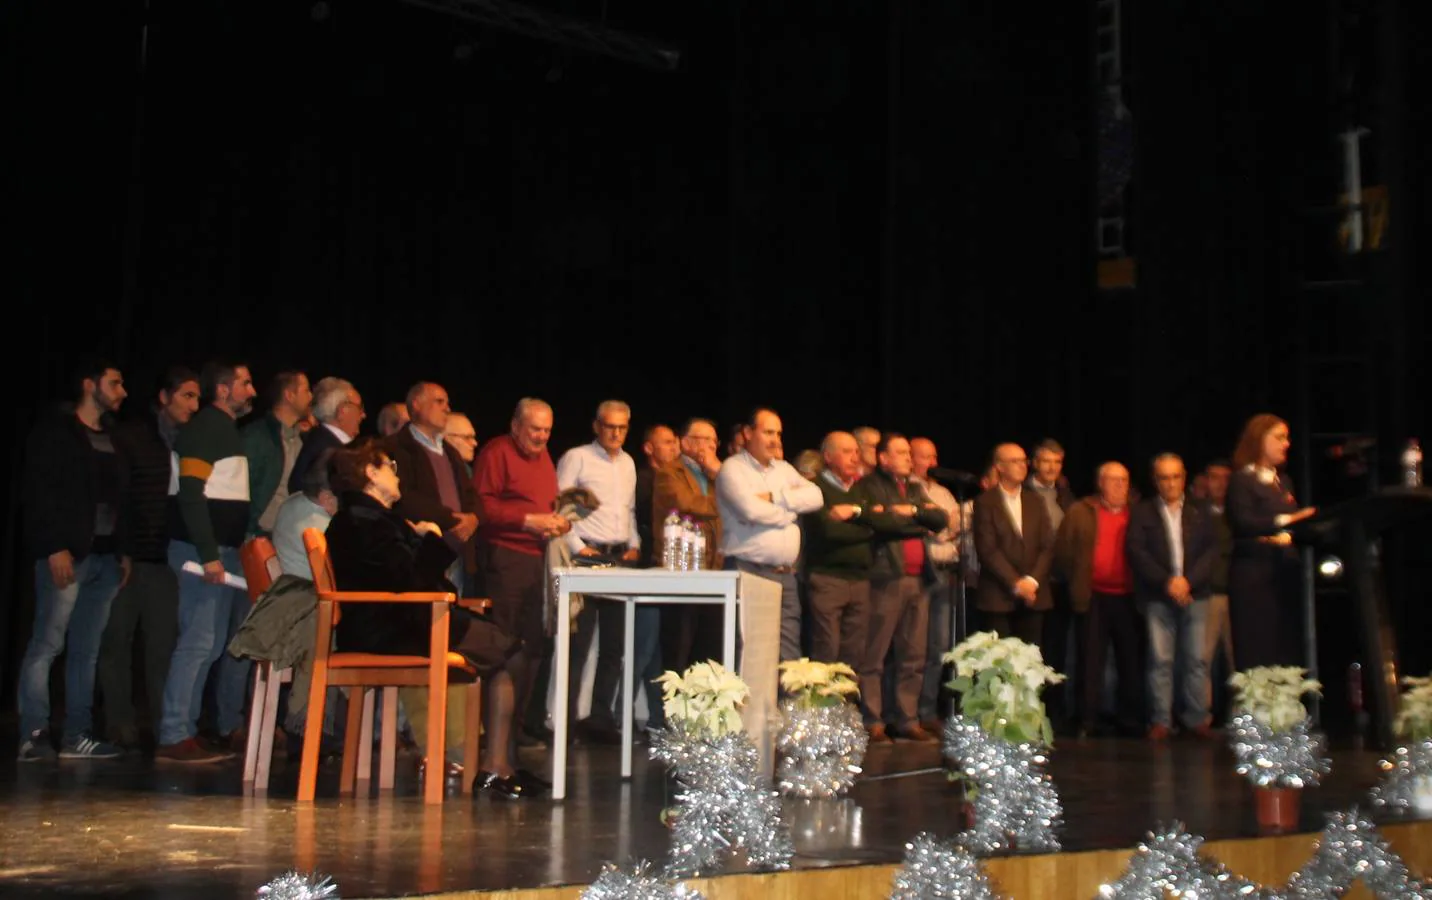 Alfonso Gallardo rodeado de sus trabajadores más antiguos y miembros de los comités de empresa organizadores del homenaje.